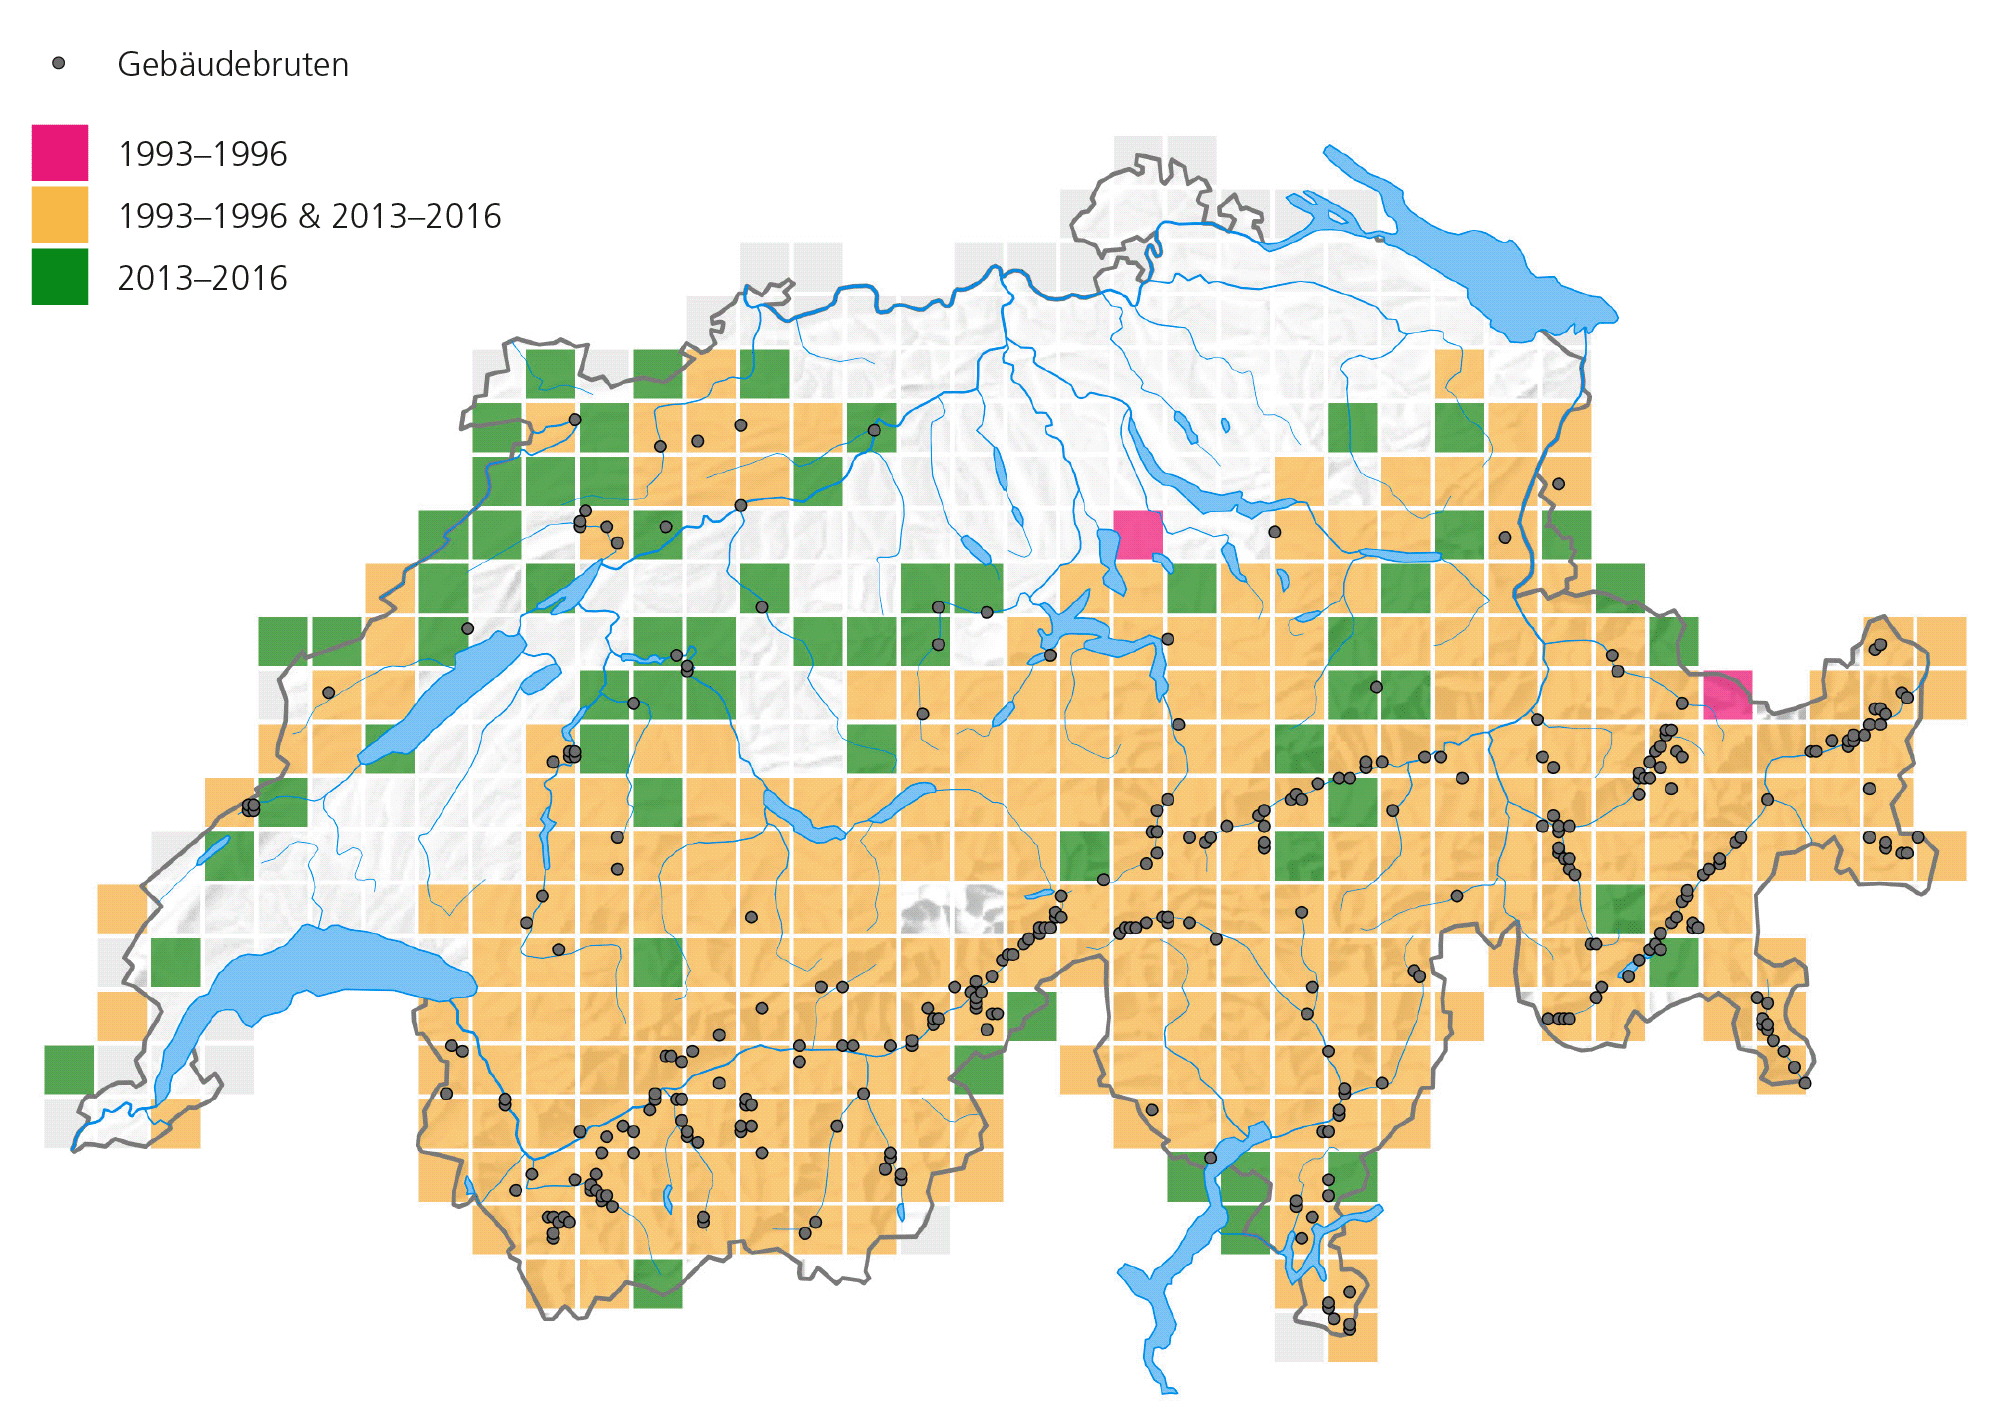 Чёрные точки – места, где скалистые ласточки стали гнездиться на зданиях, малиновый – в 1993-1996 гг., оранжевый – 1993-96 &2013-2016 гг., зелёный – 2013-2016 гг. Больше всего таких случаев в основном ареале вида в альпийском регионе, вне его это случается гораздо реже. Источник vogelwarte.ch